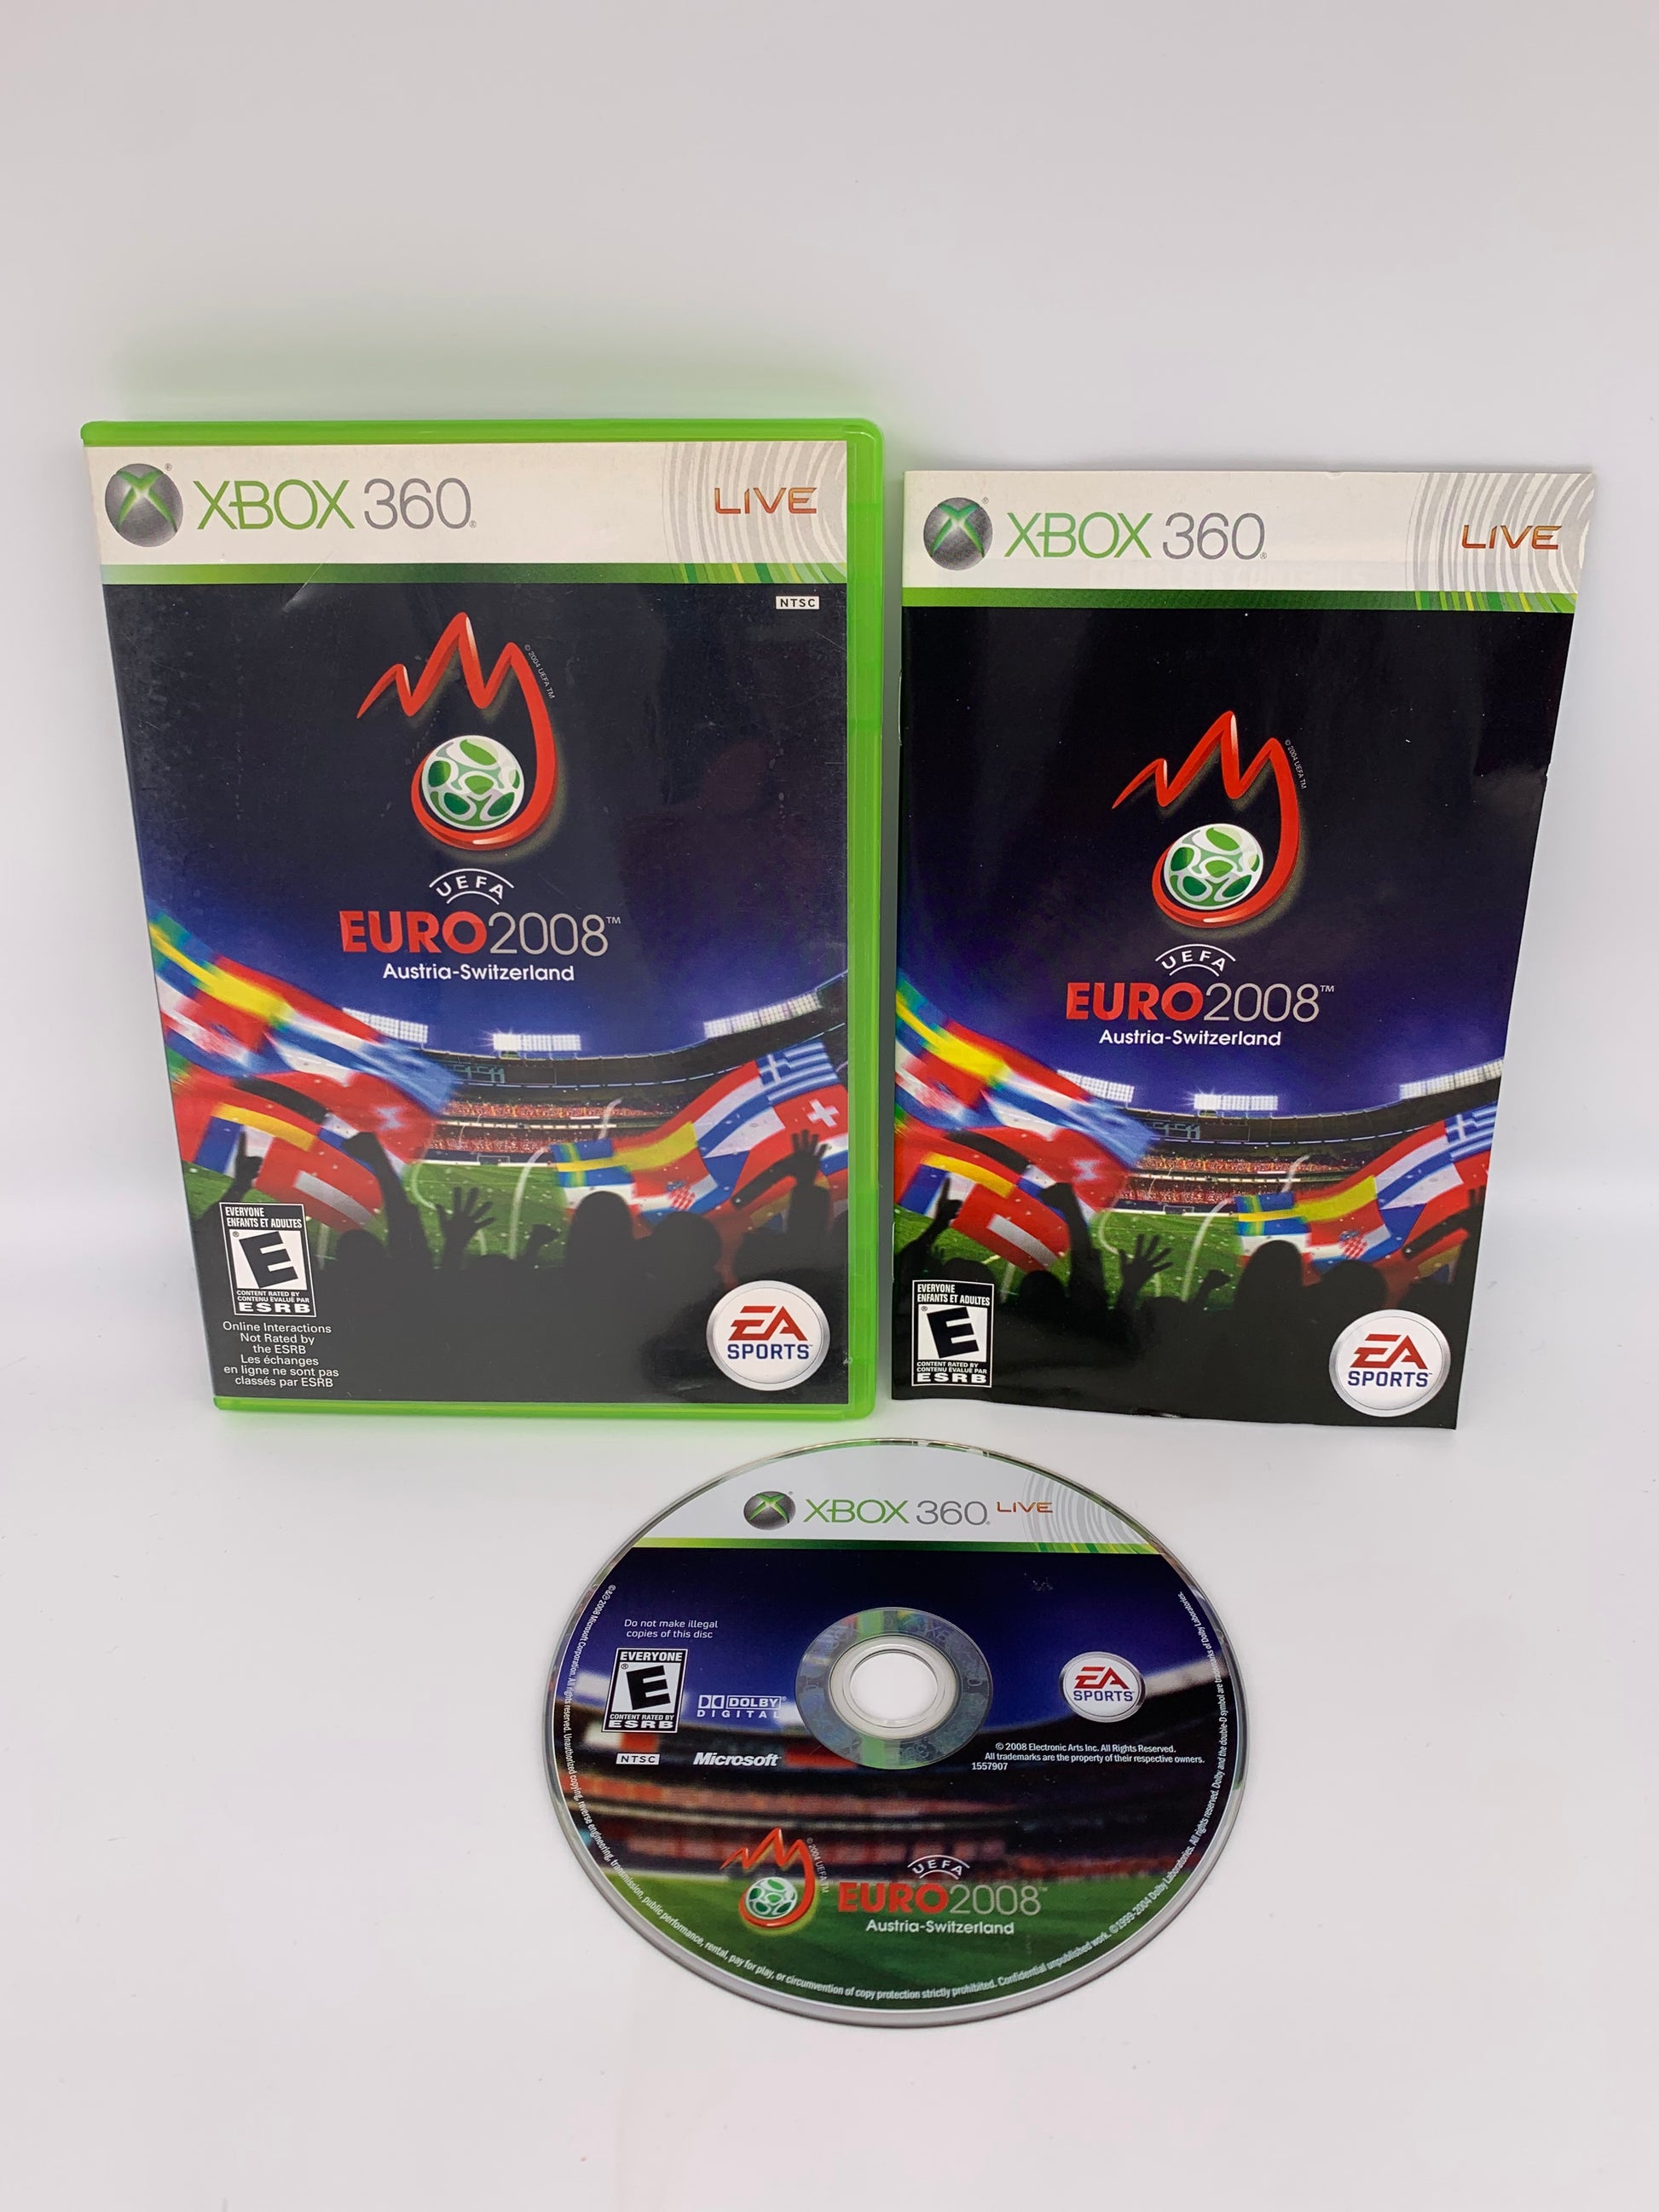 PiXEL-RETRO.COM : MICROSOFT XBOX 360 COMPLETE CIB BOX MANUAL GAME NTSC UEFA EURO 2008